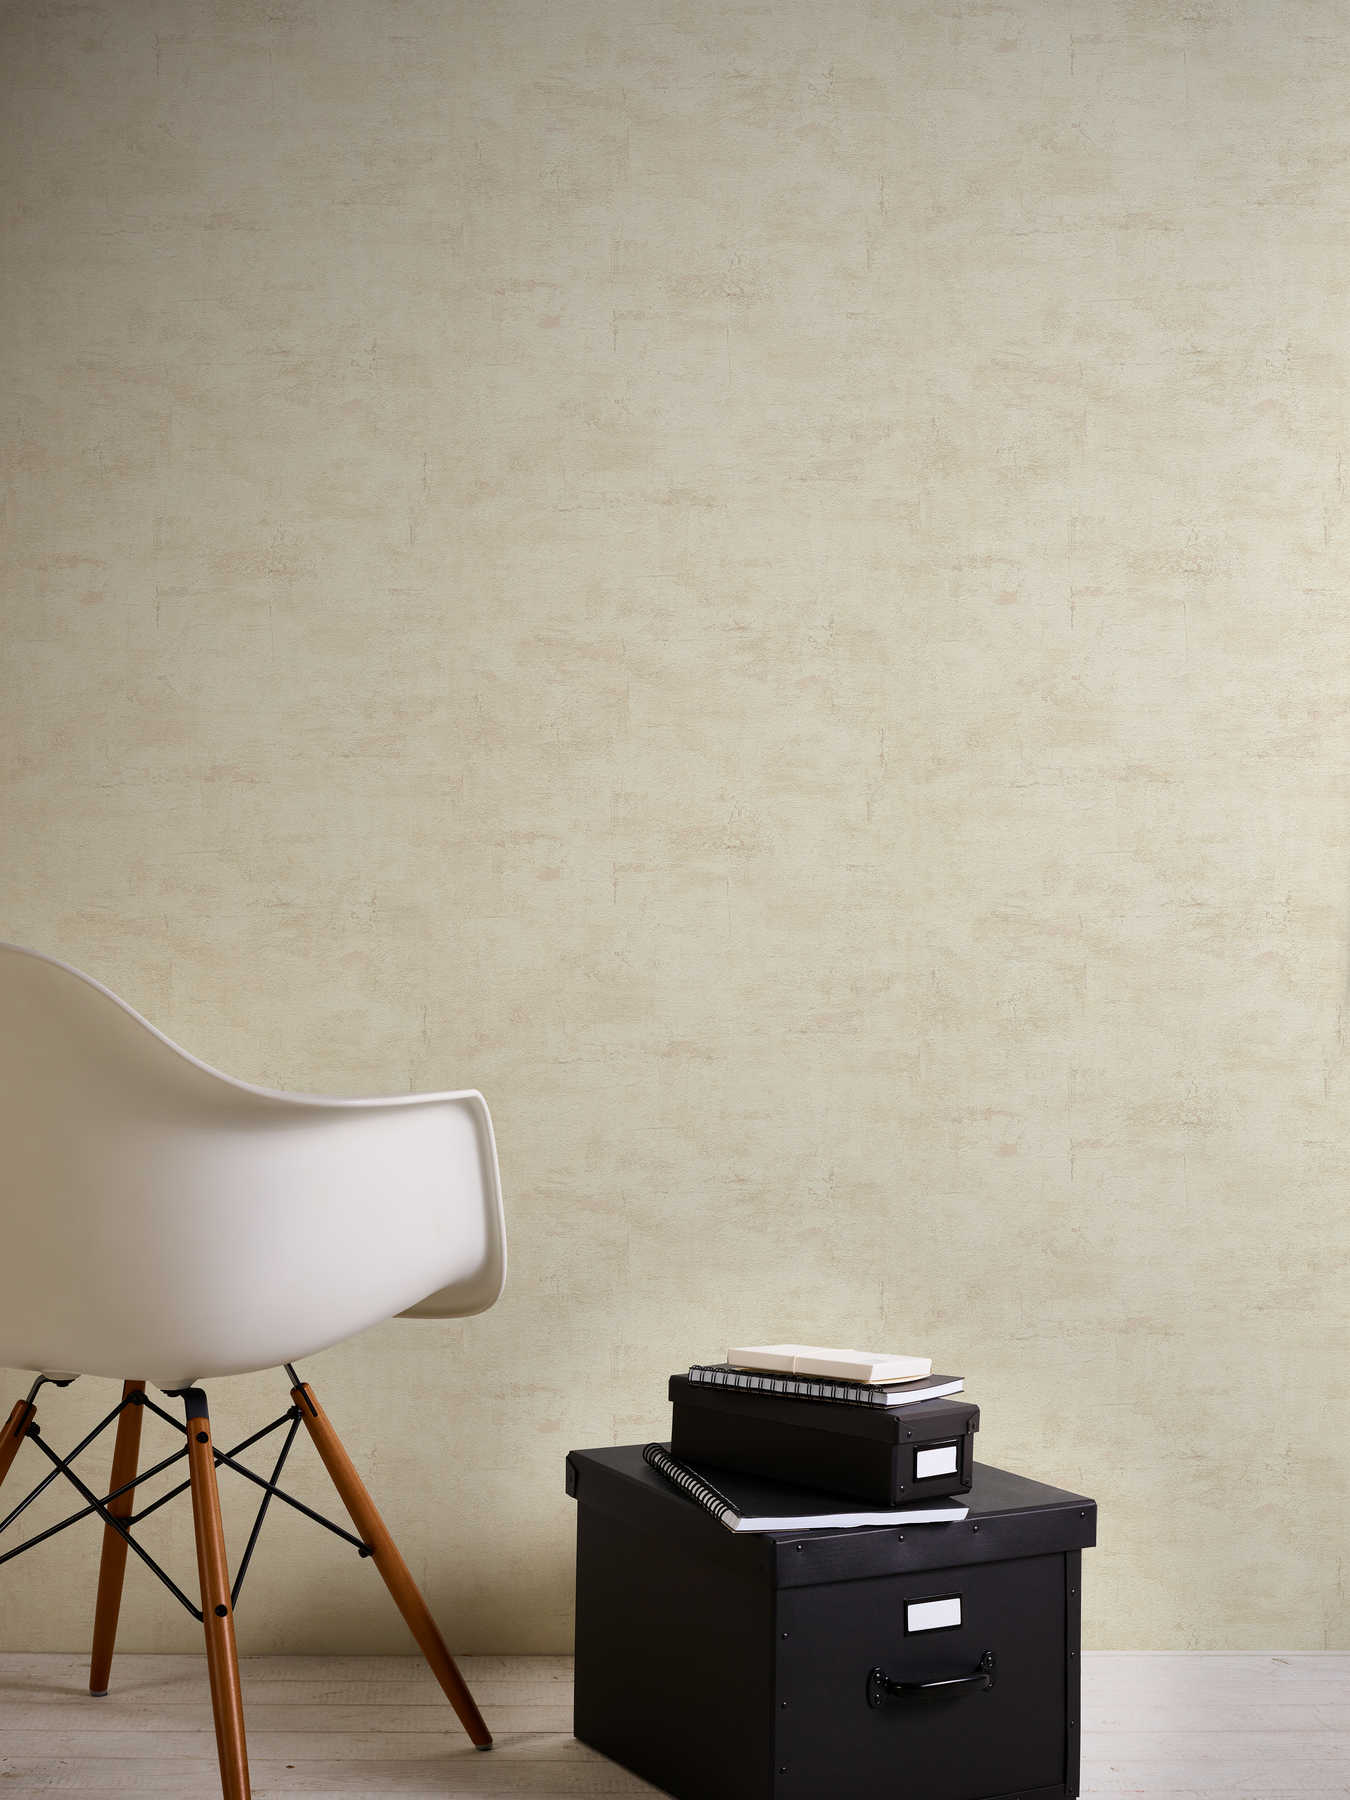             Textured wallpaper with light beige plaster look - beige, brown
        